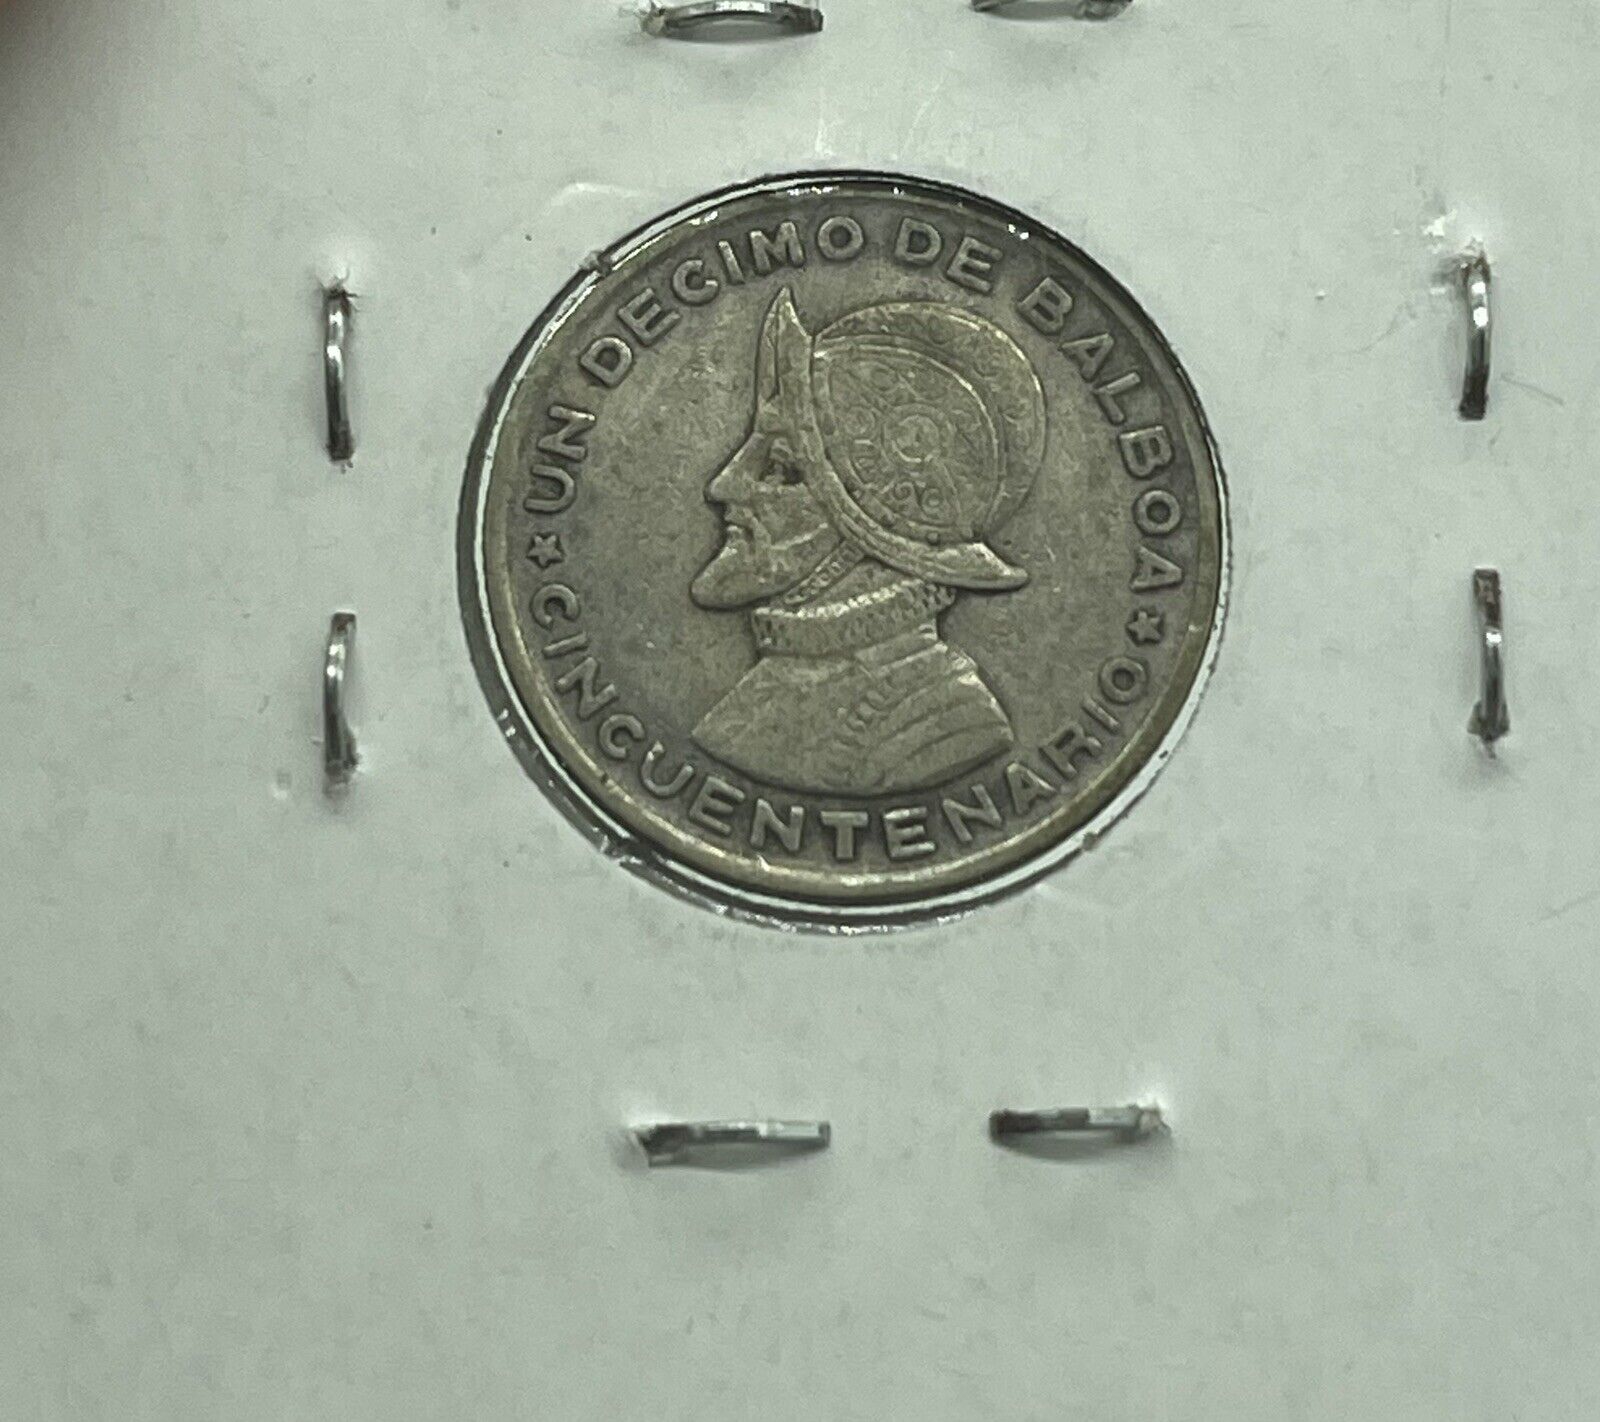 Panama - 1953 - 1/10 Balboa - 90% Panamanian Silver Coin